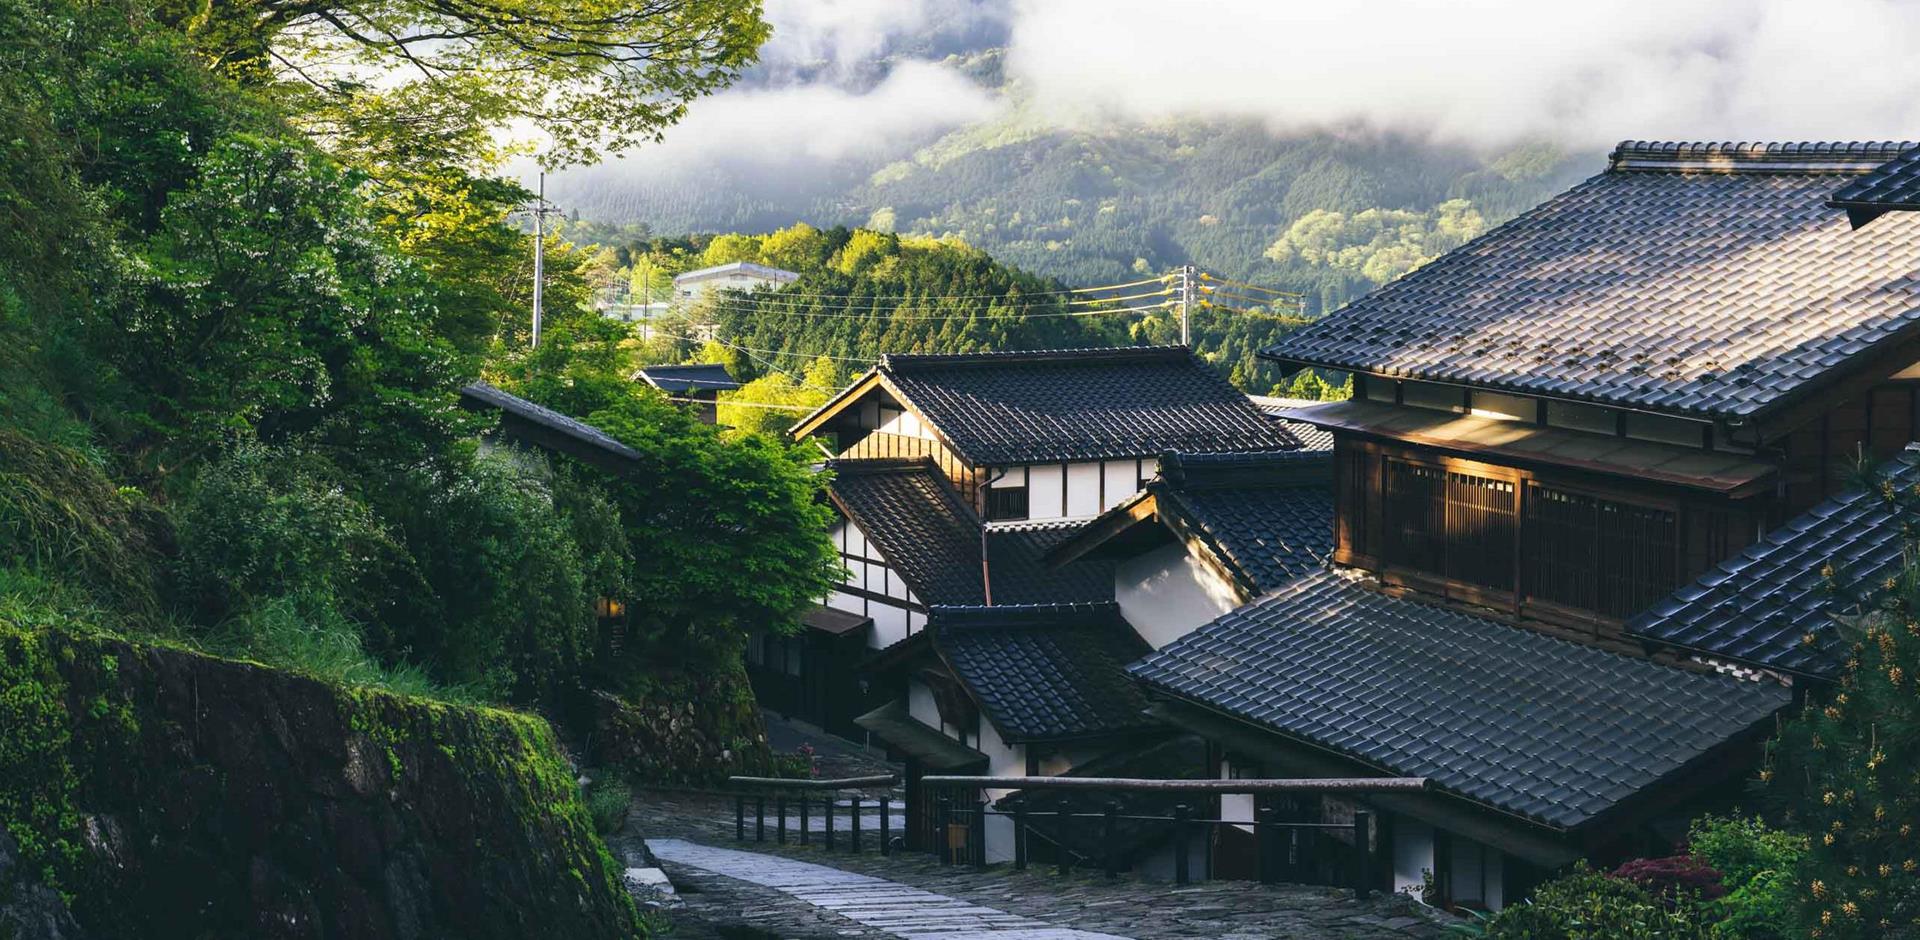 A&K itinerary: Trek the Nakasendo way, Japan